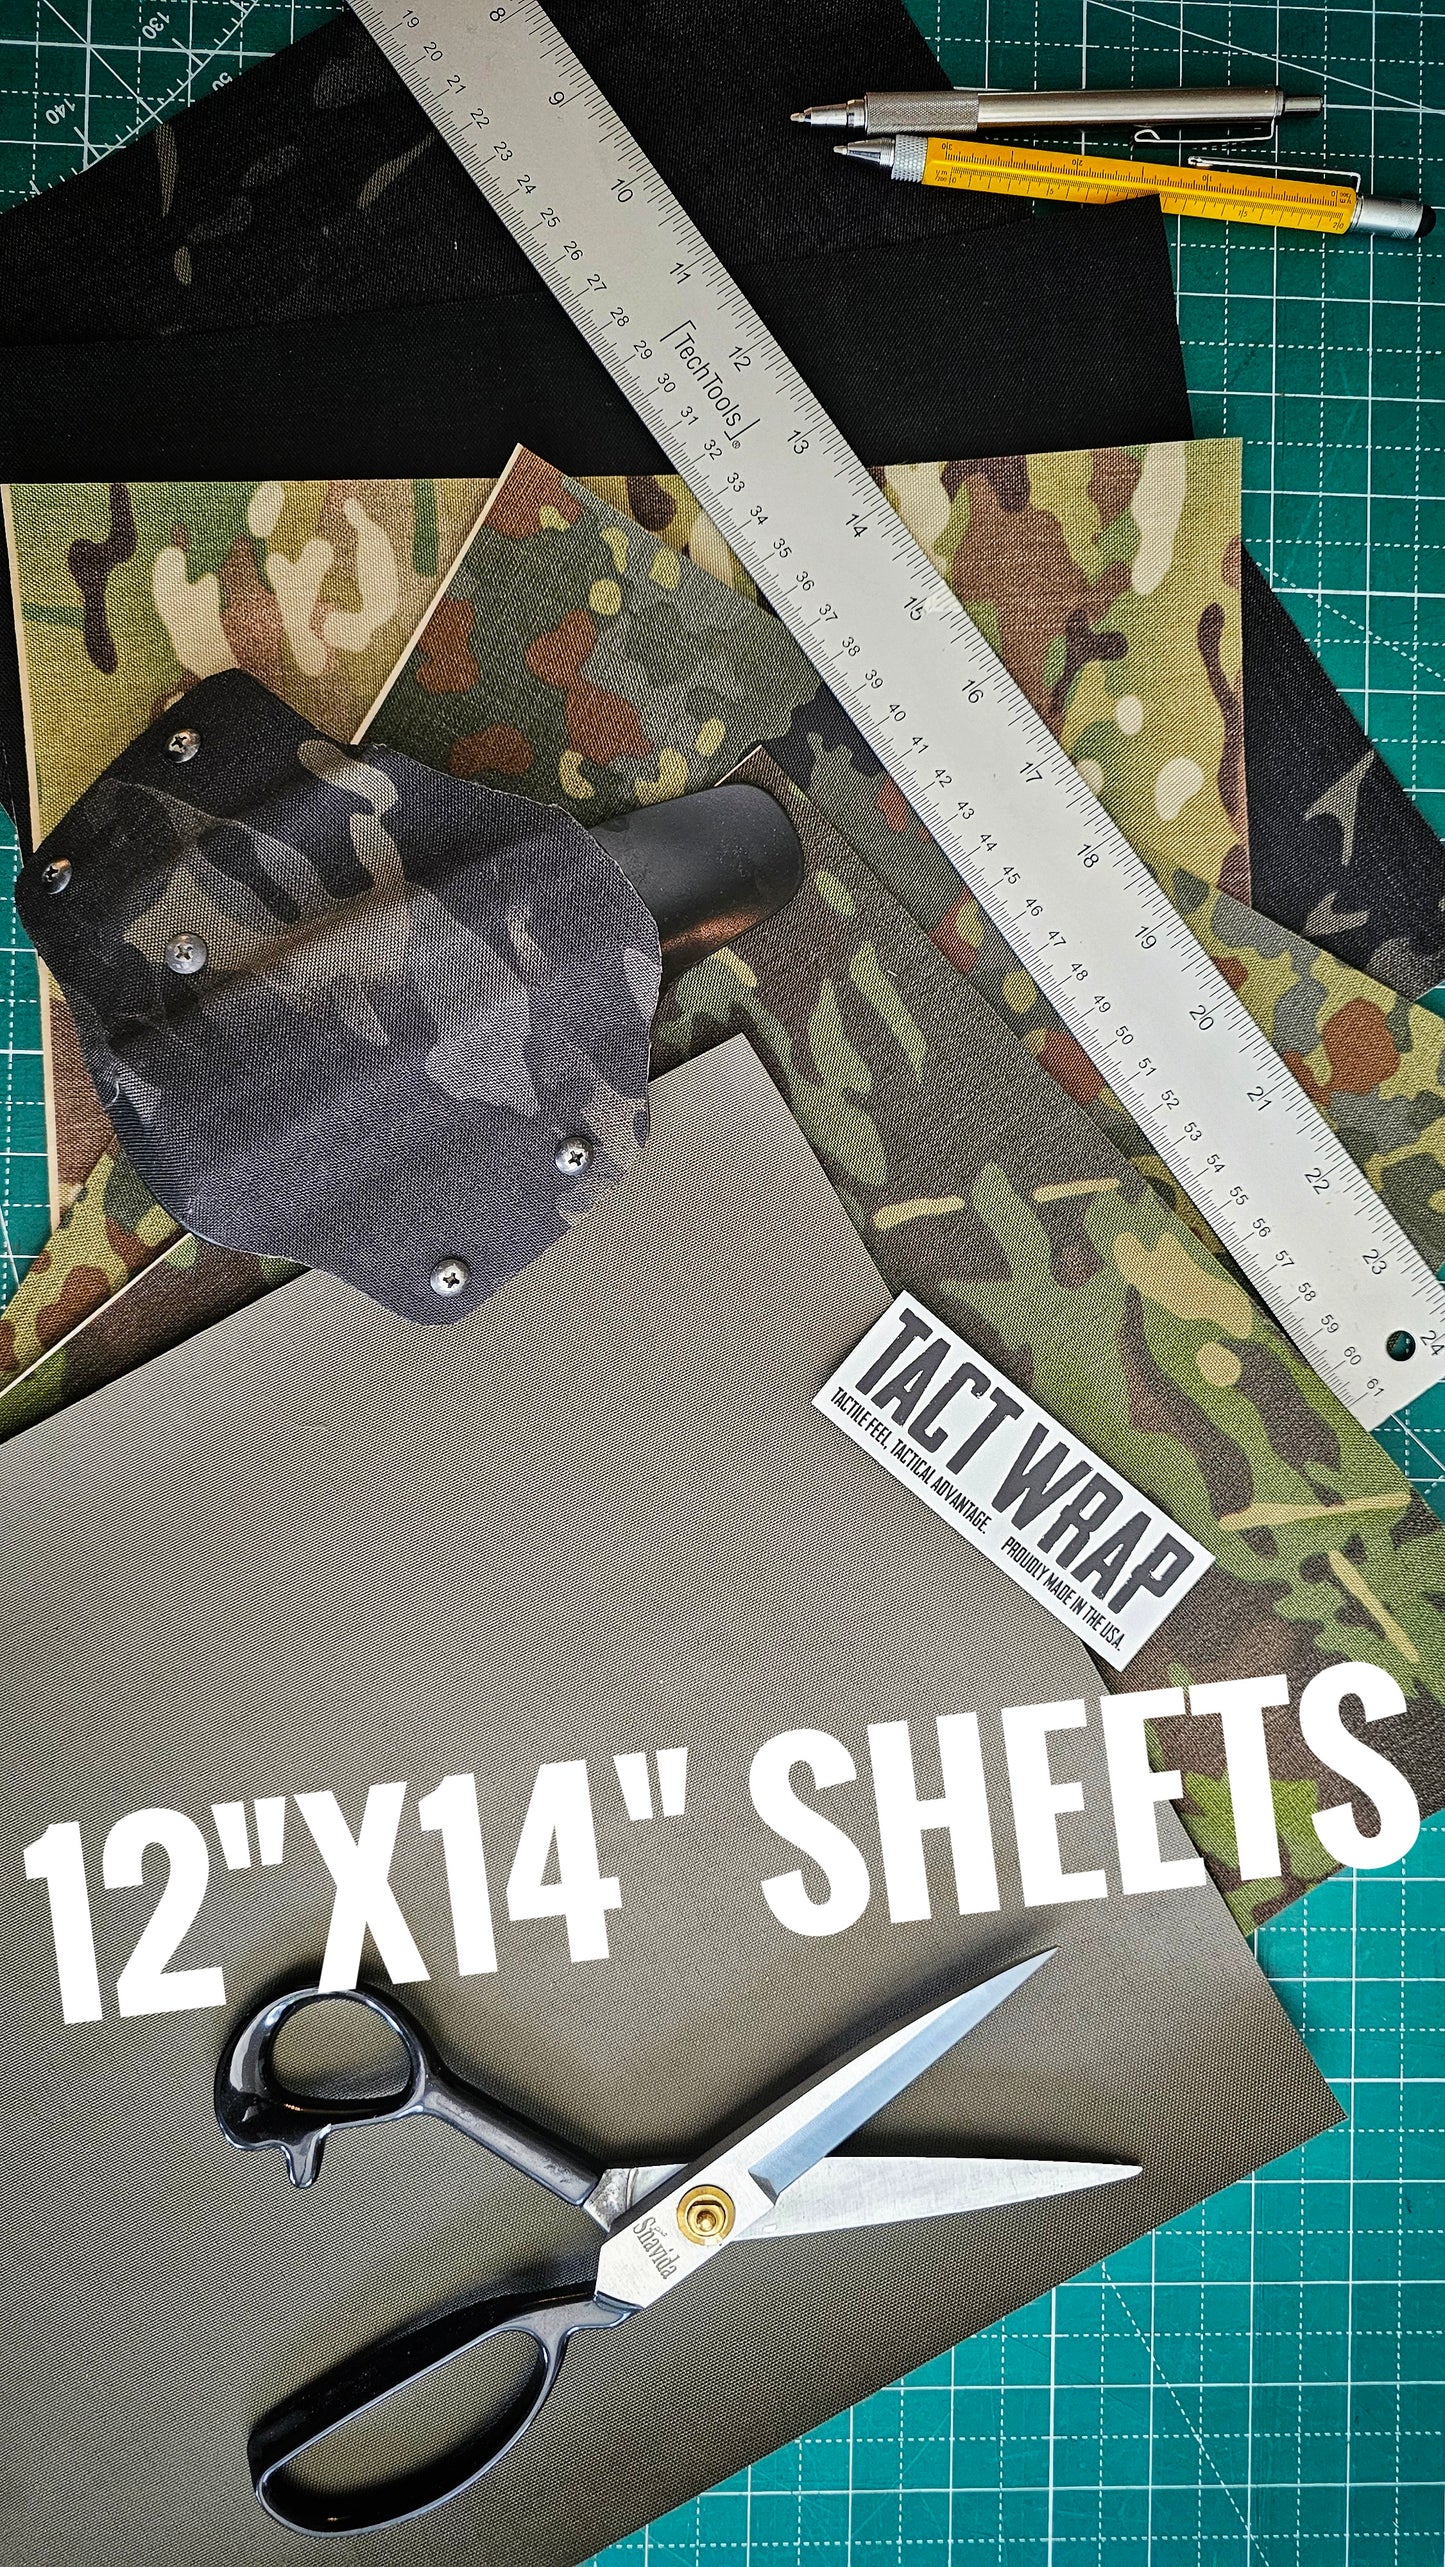 12"x14" Sheets - Uncut